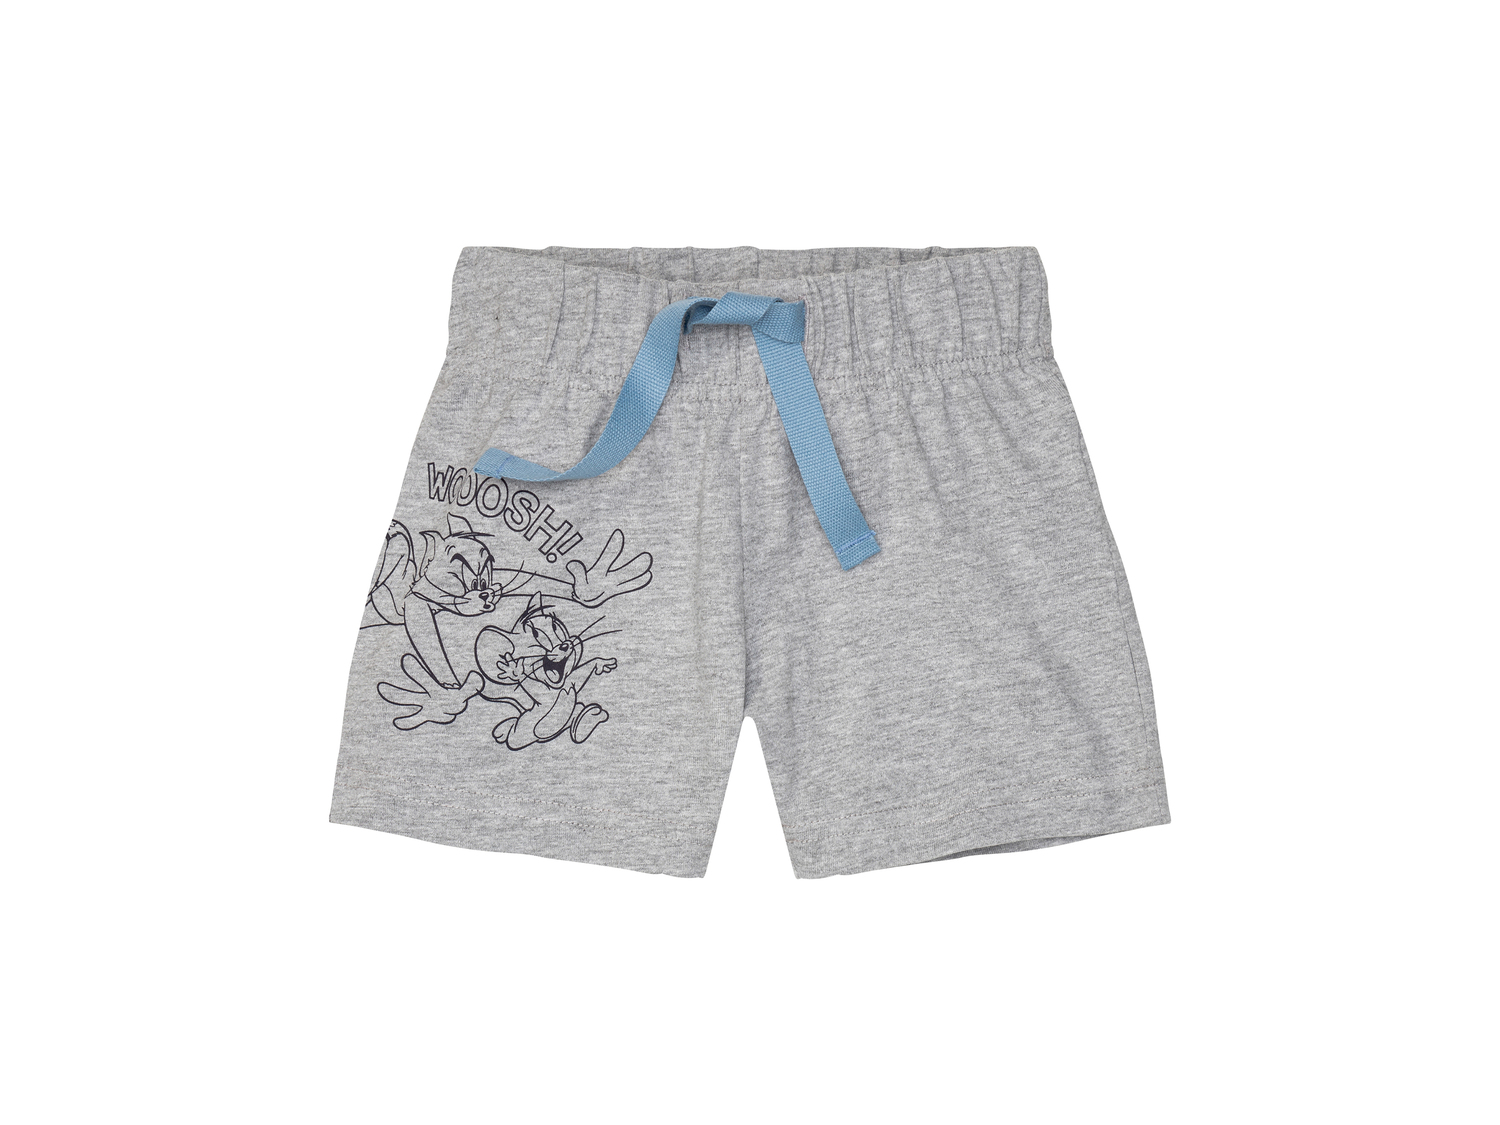 Shorts da bambino Tom-and-jerry, prezzo 4.99 &#8364; 
Misure: 1-6 anni
Taglie ...